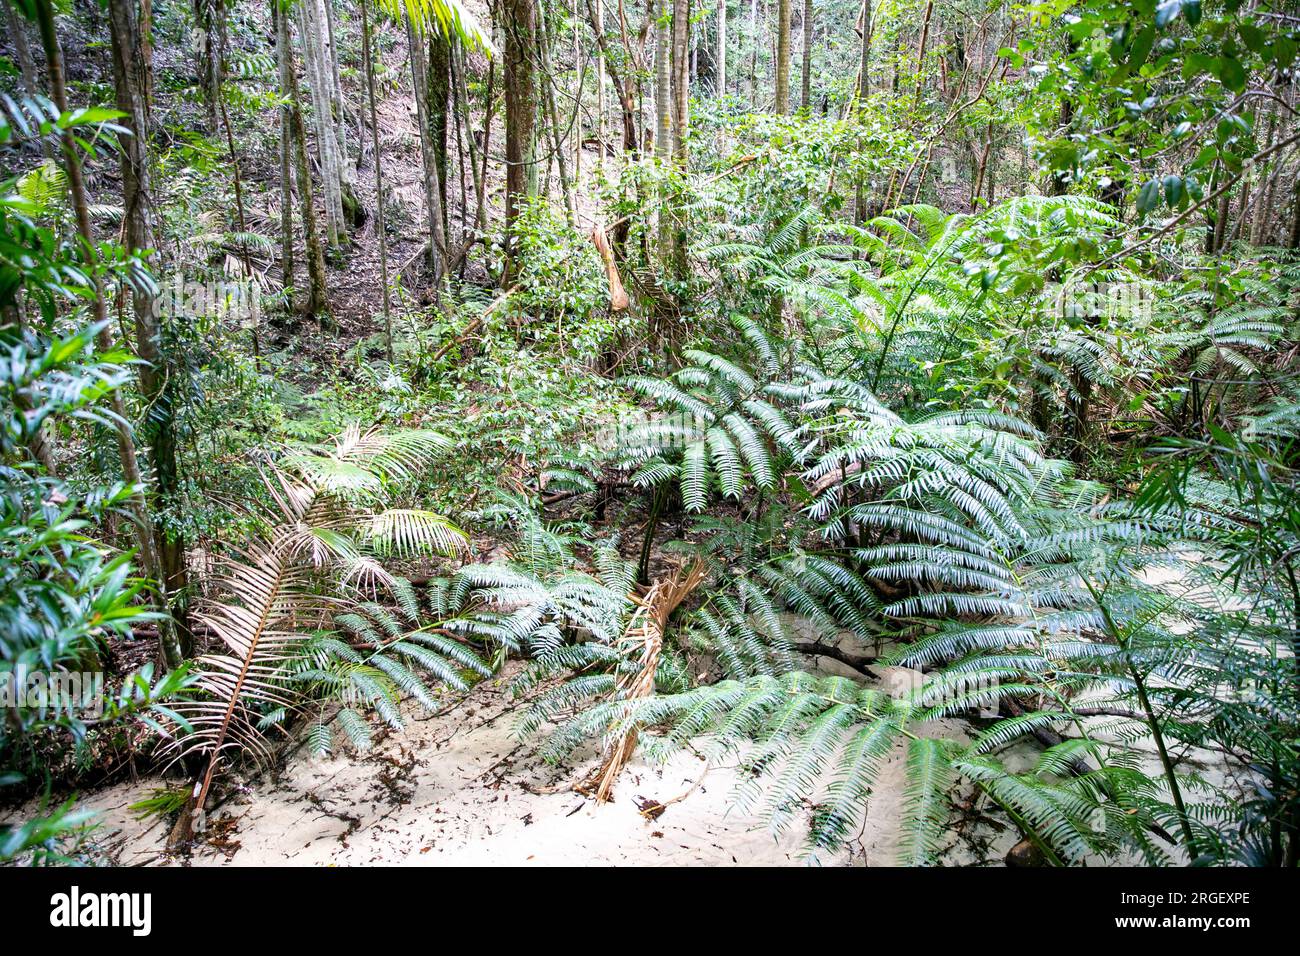 Fraser Island K'gari Wanggoolba Creek à Central Station, ruisseau traversant la forêt tropicale menant à pile Valley et aux arbres géants satinés. Banque D'Images